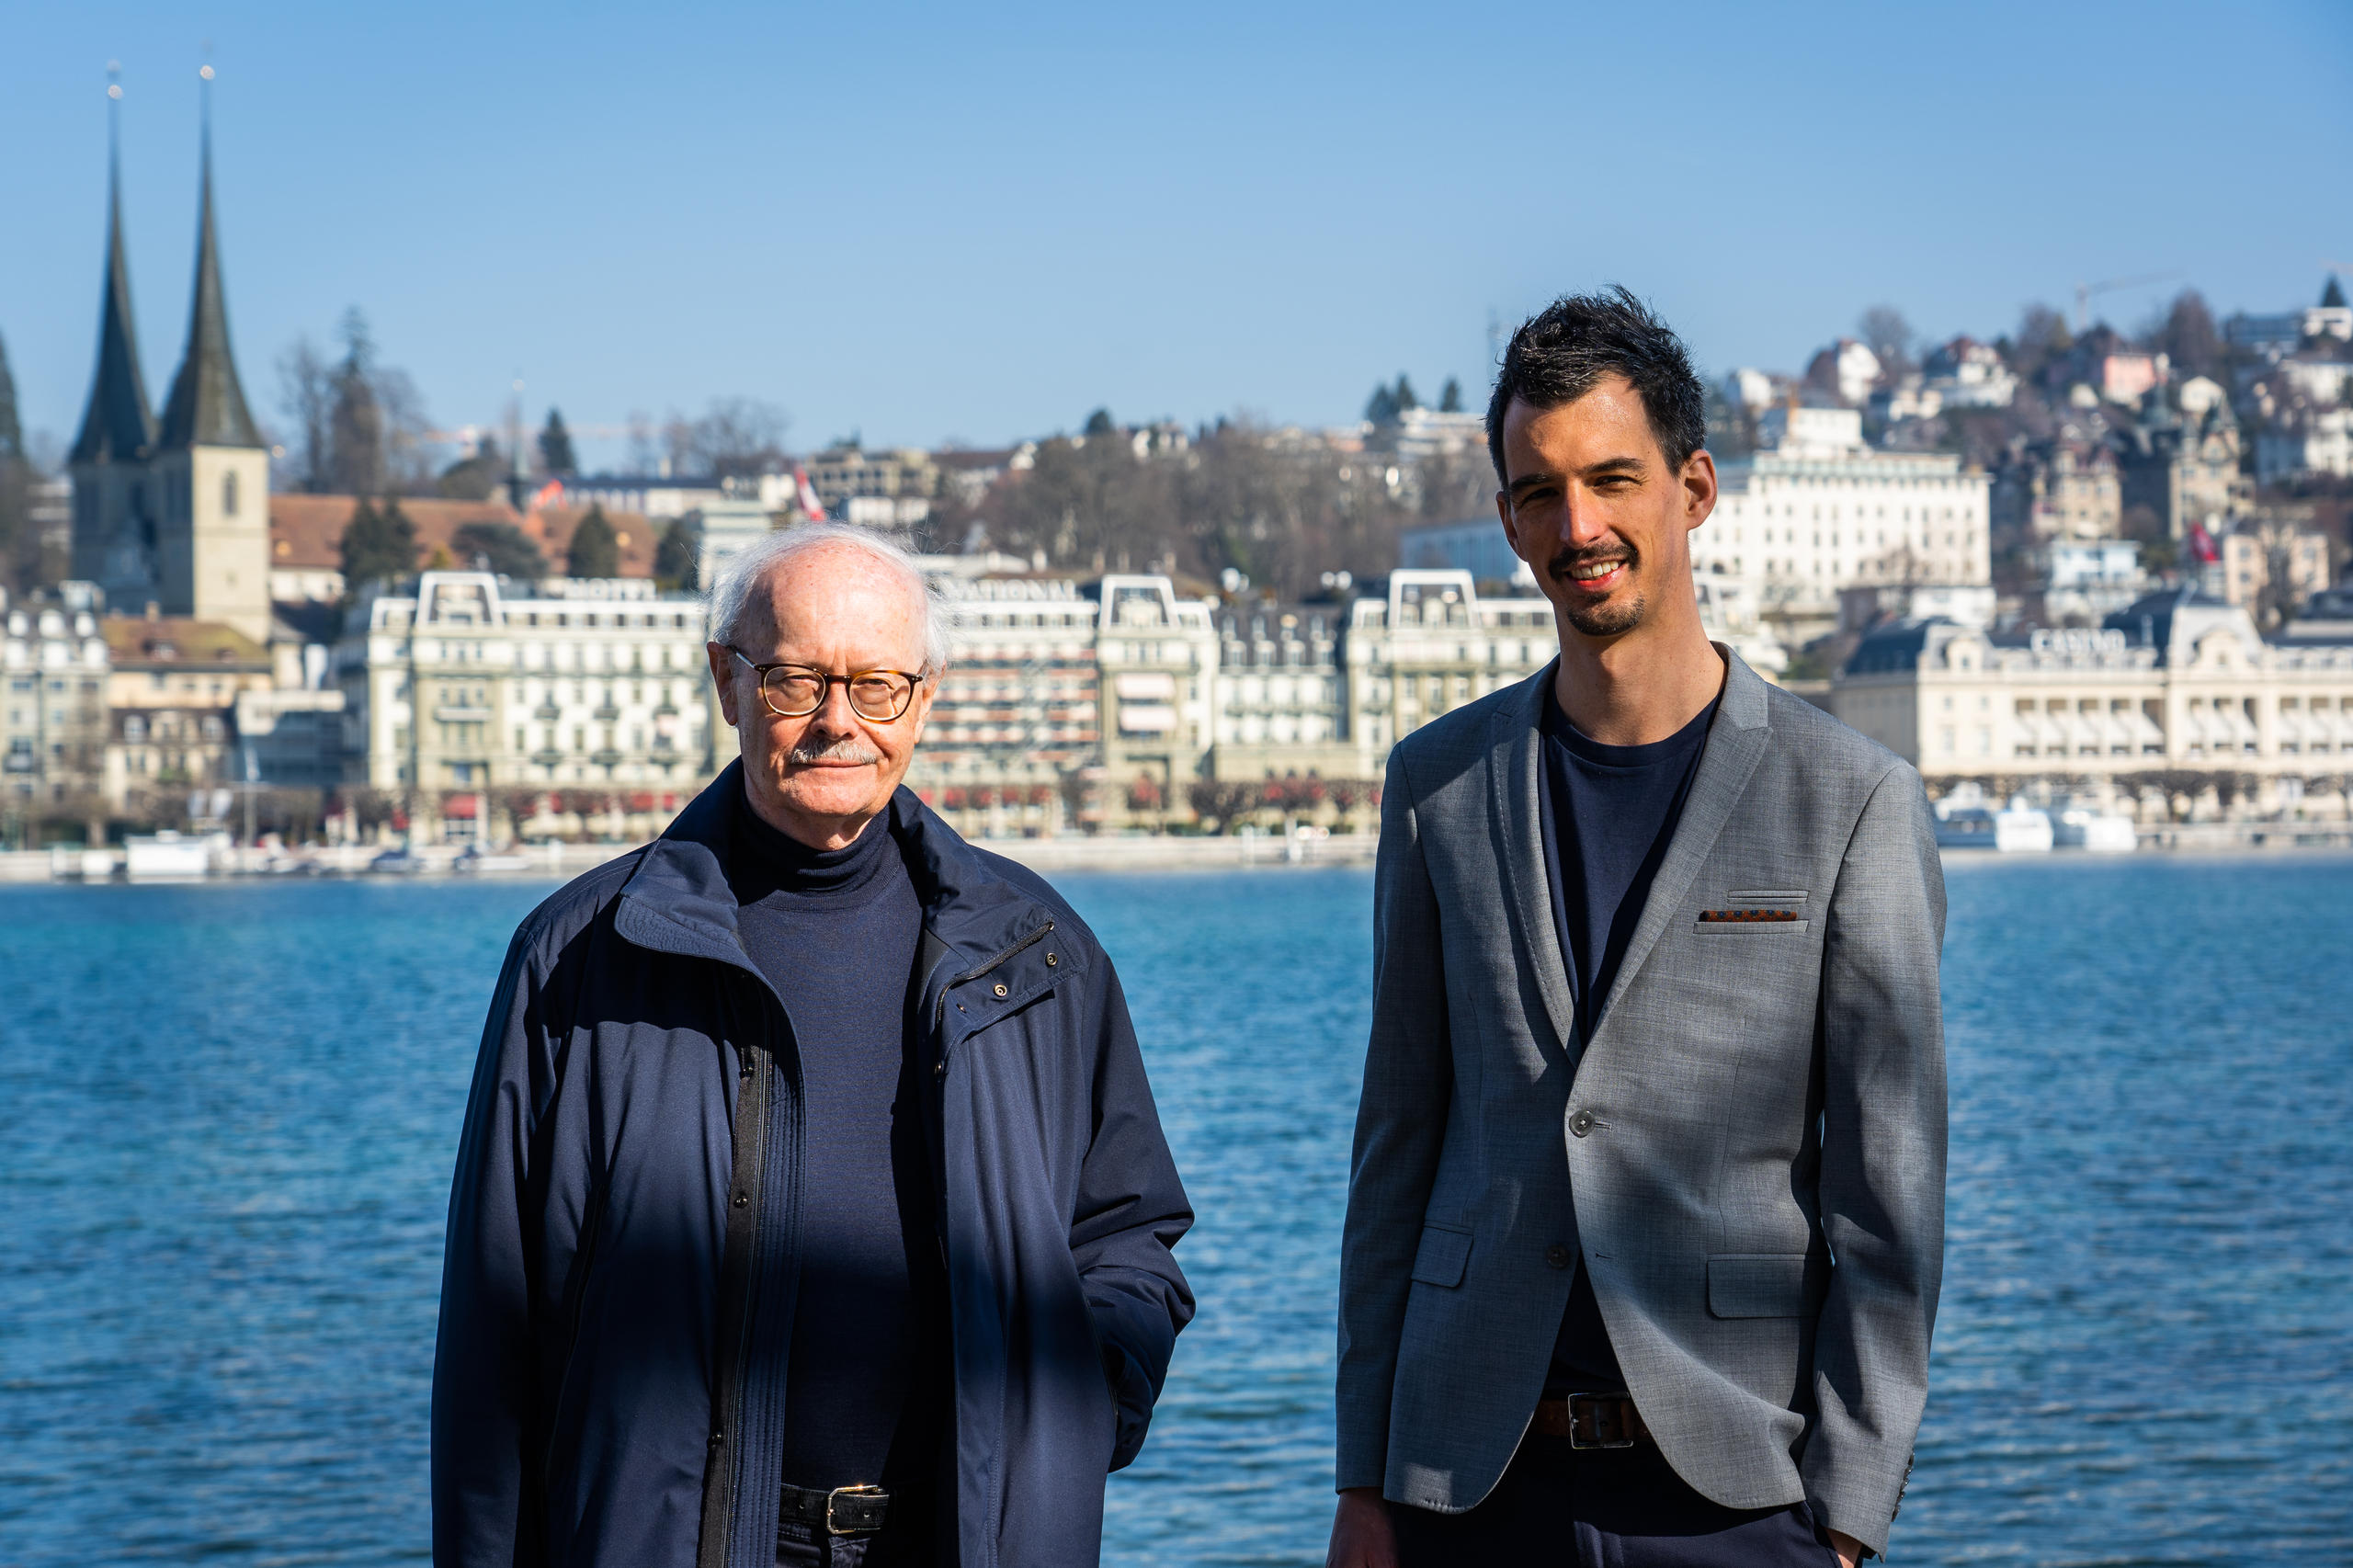 Ernst Baltensperger und Fabio Canetg in Zürich